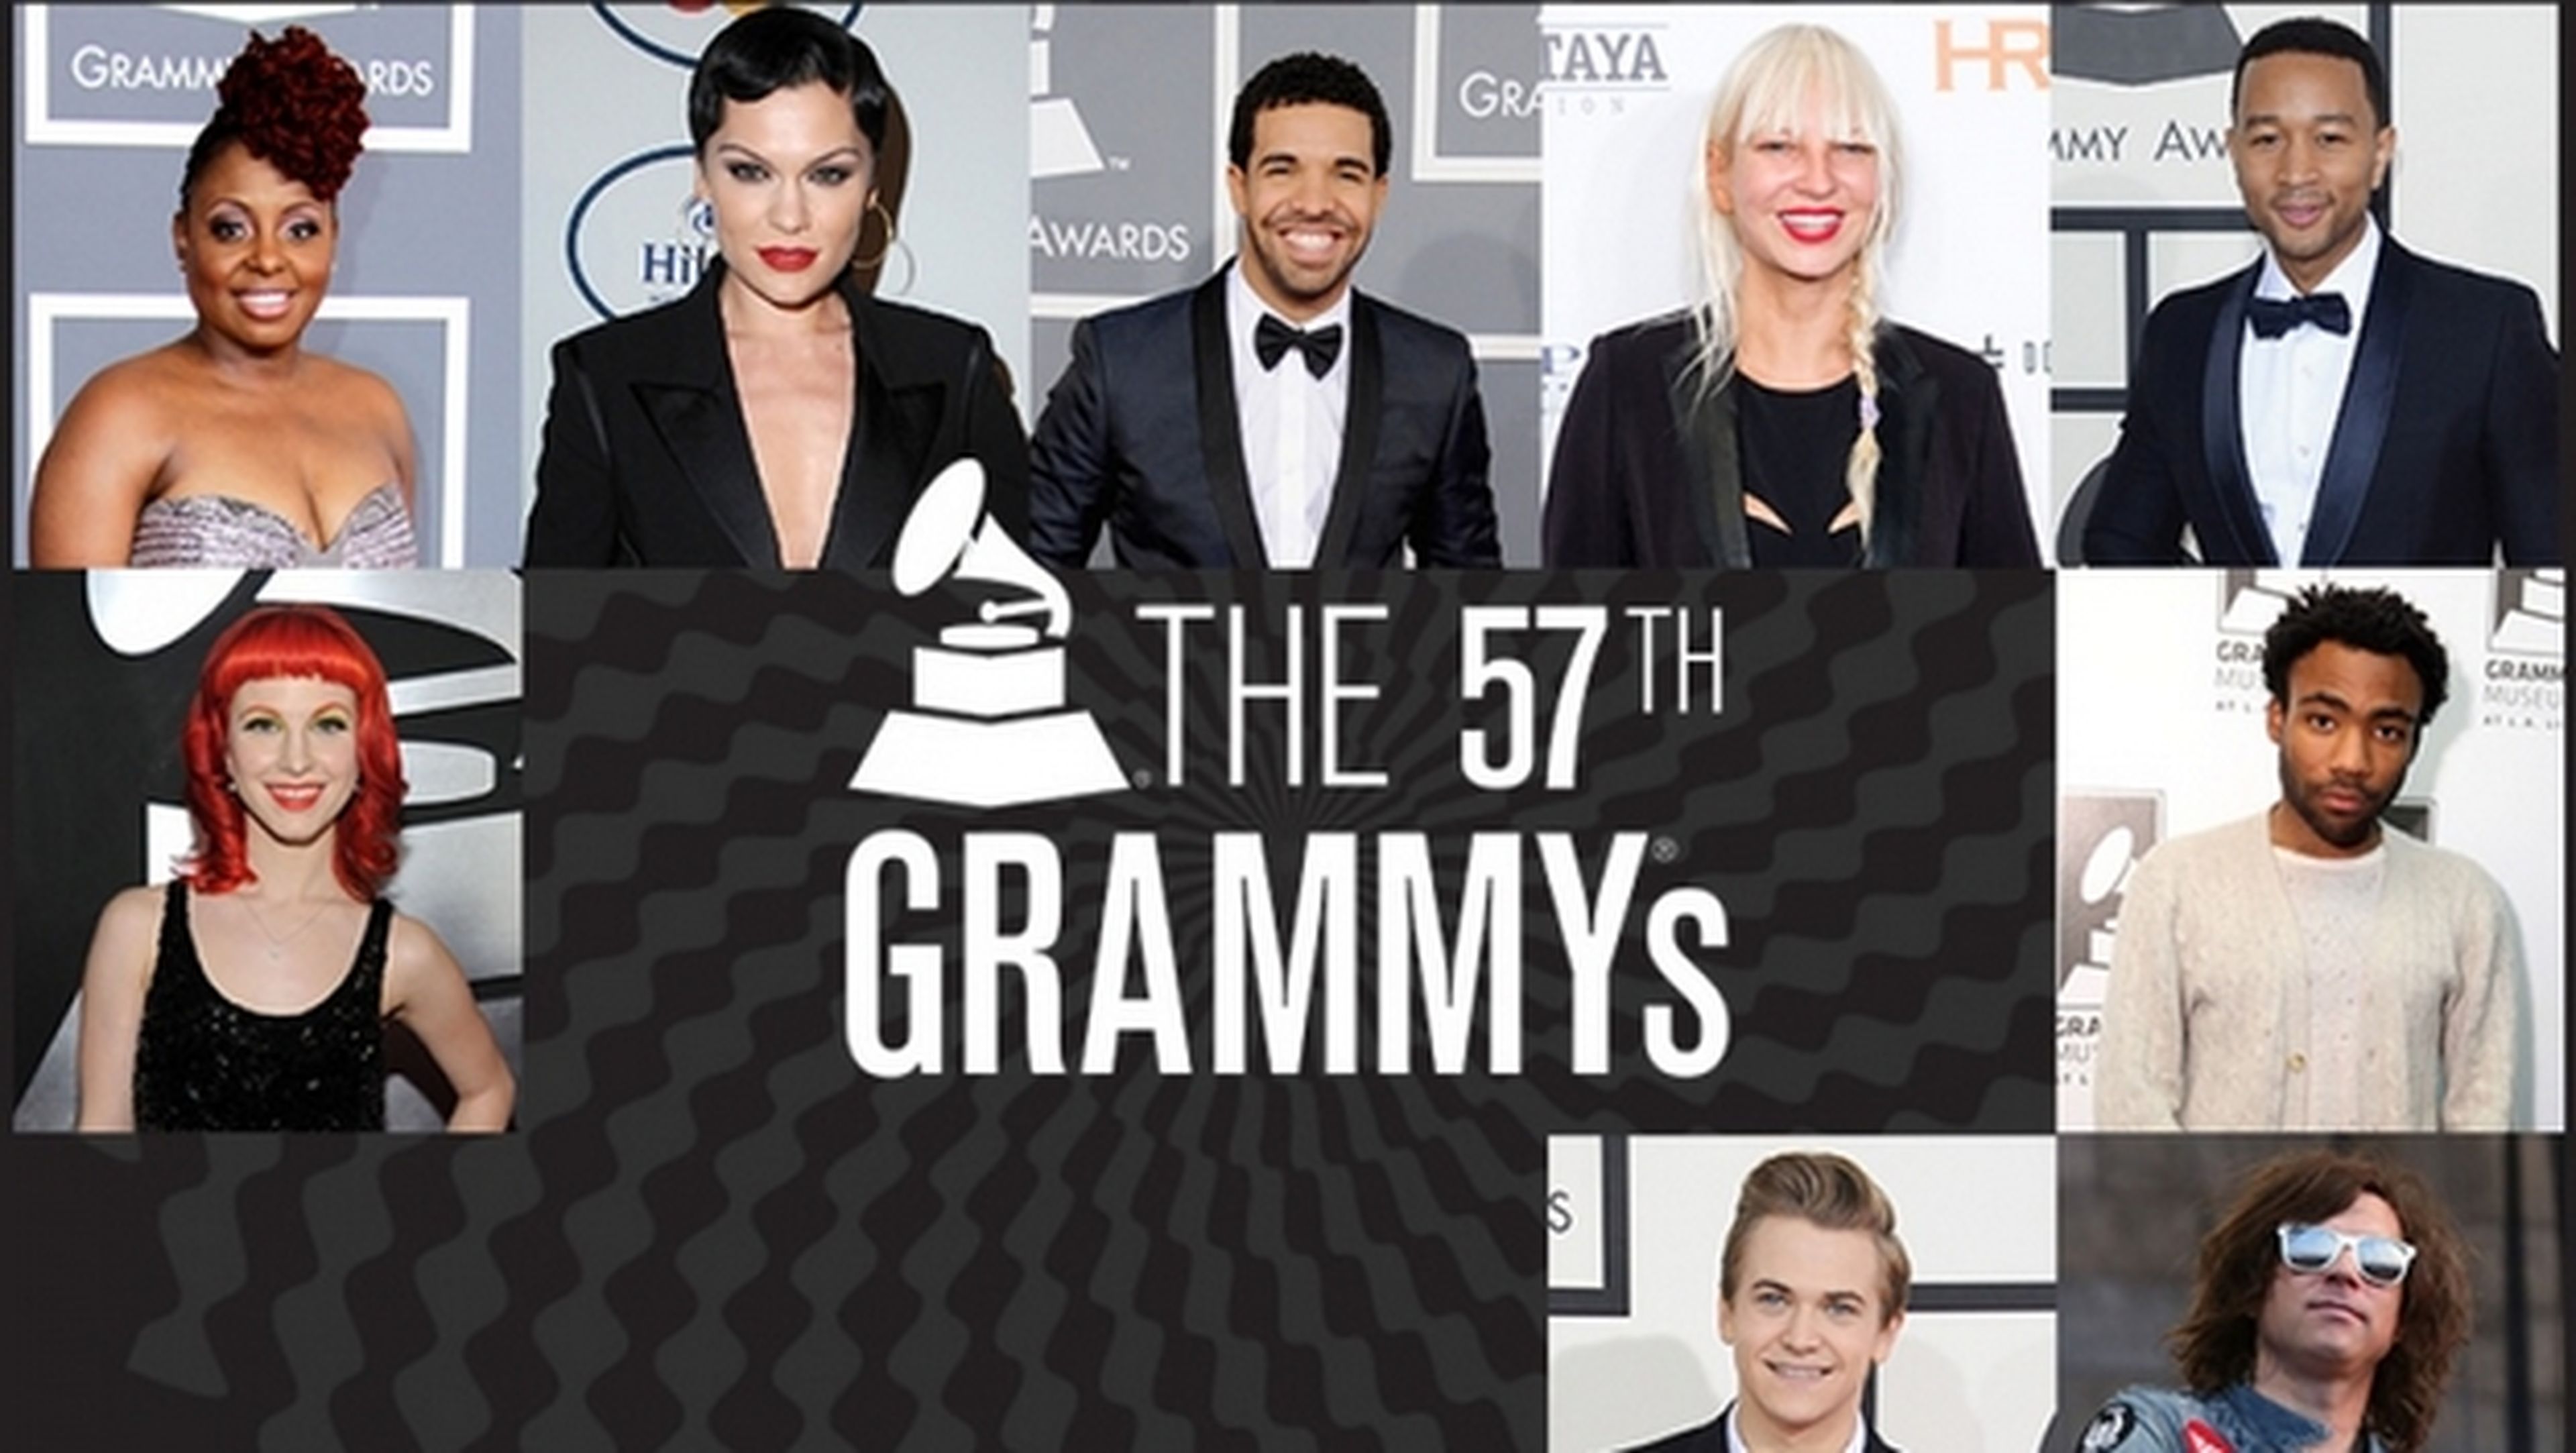 Dónde ver online y en directo Los Grammys 2015.